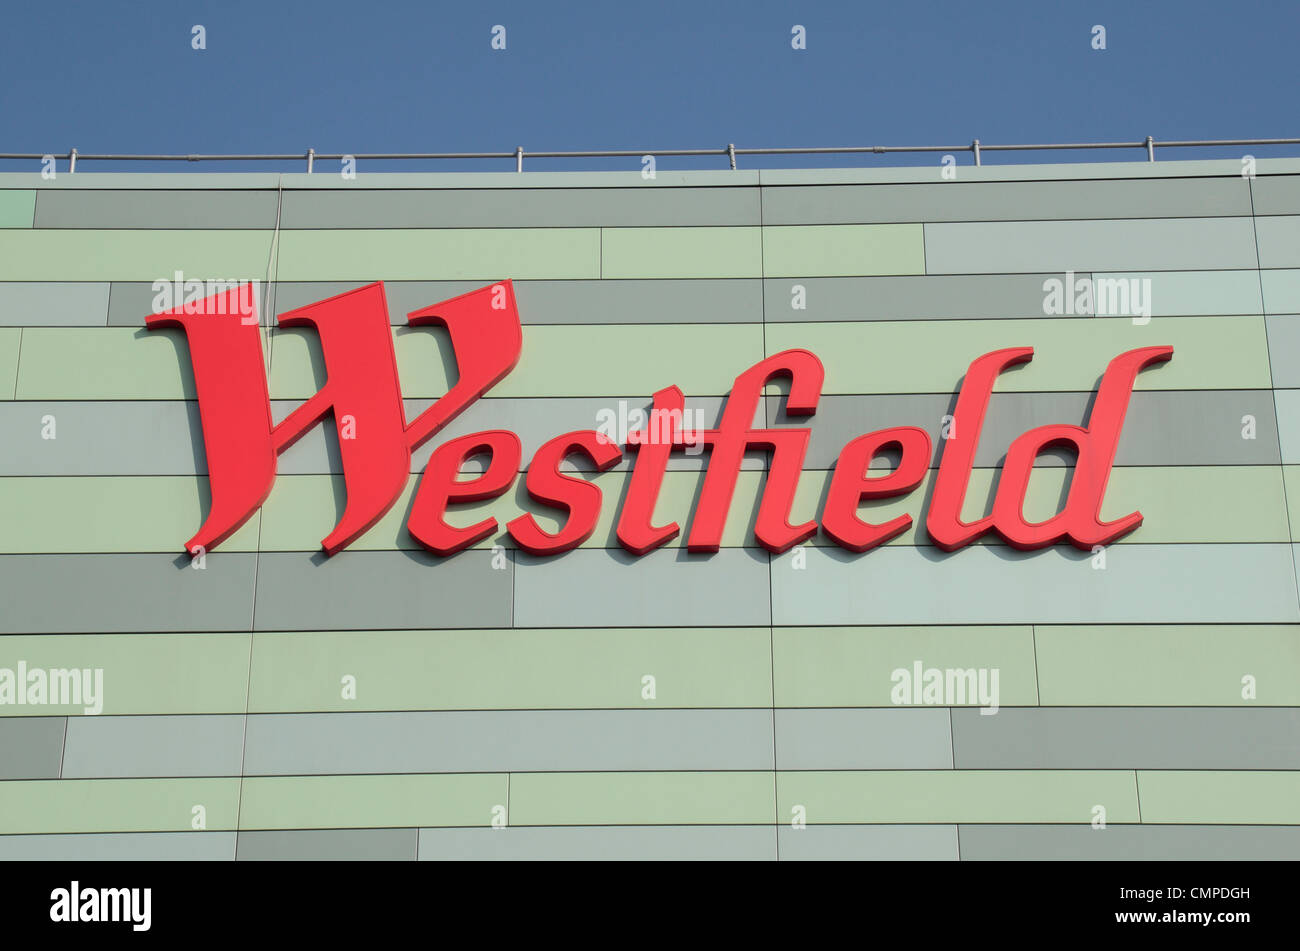 El centro comercial Westfield London Situado en Shepherds Bush en Londres. Foto de stock